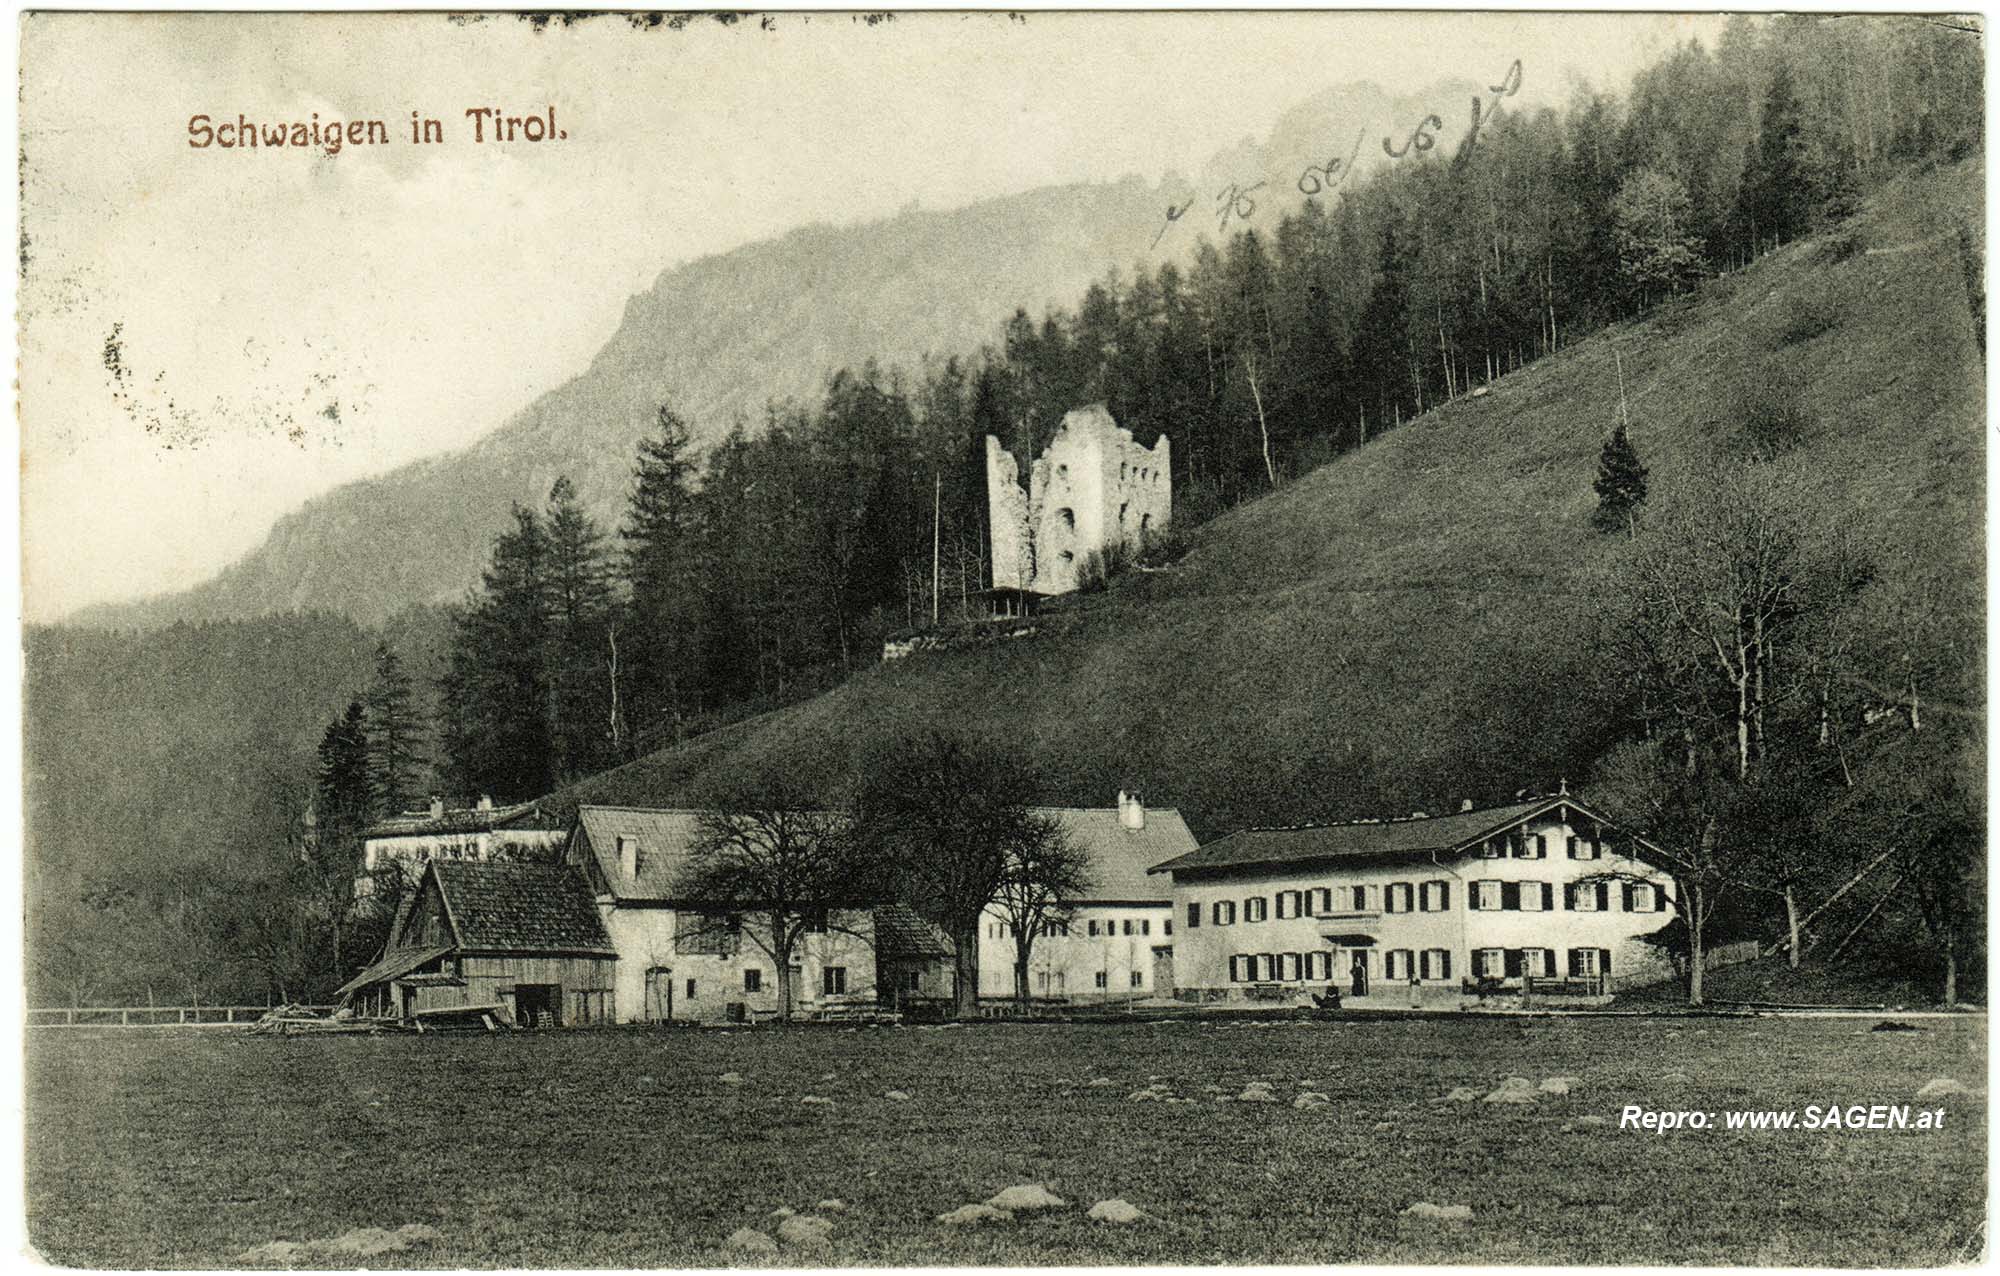 Schwaigen in Tirol, Burg Katzenstein